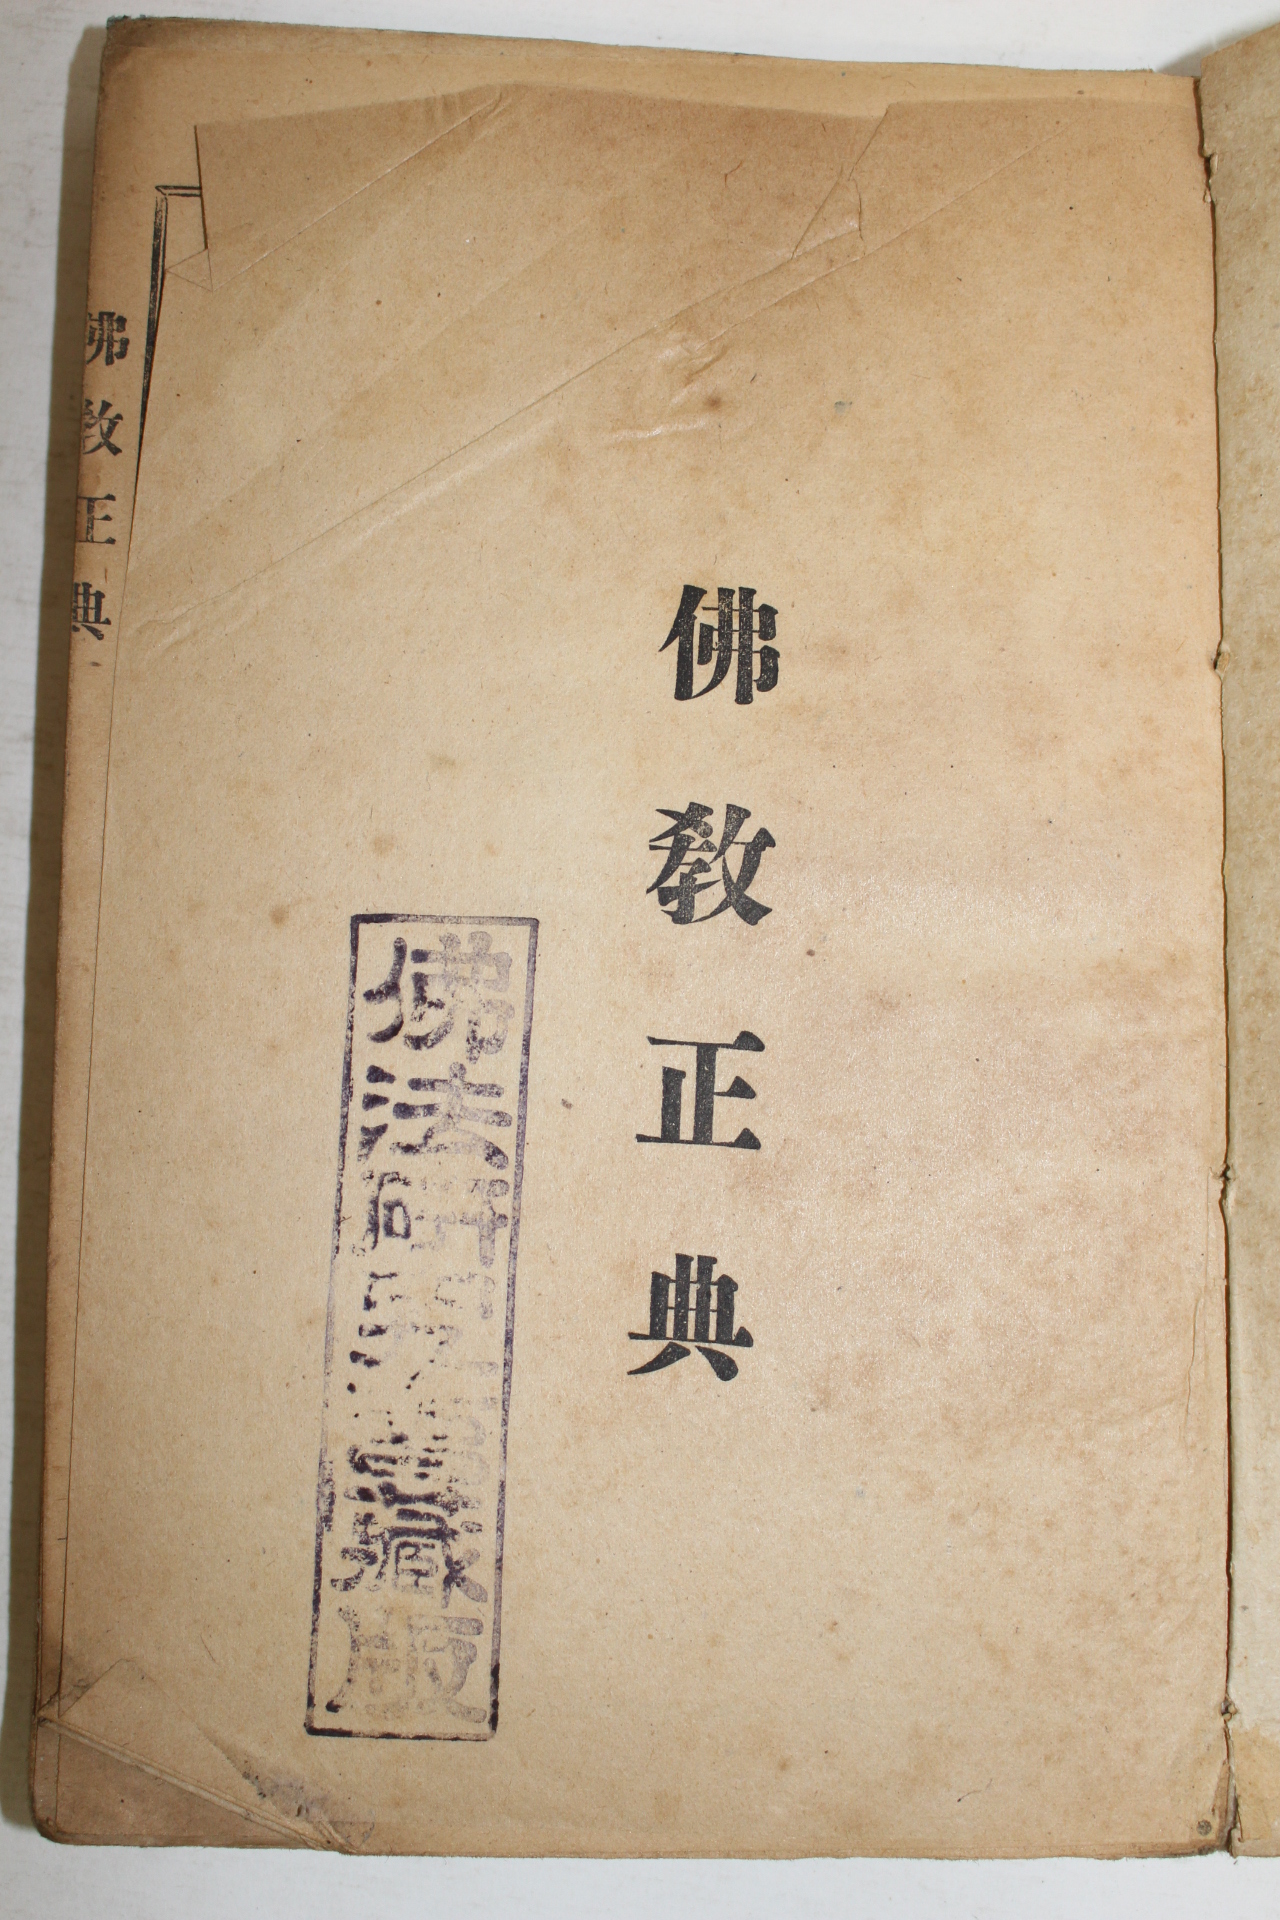 1943년 경성간행 불교정전(佛敎正典) 권1